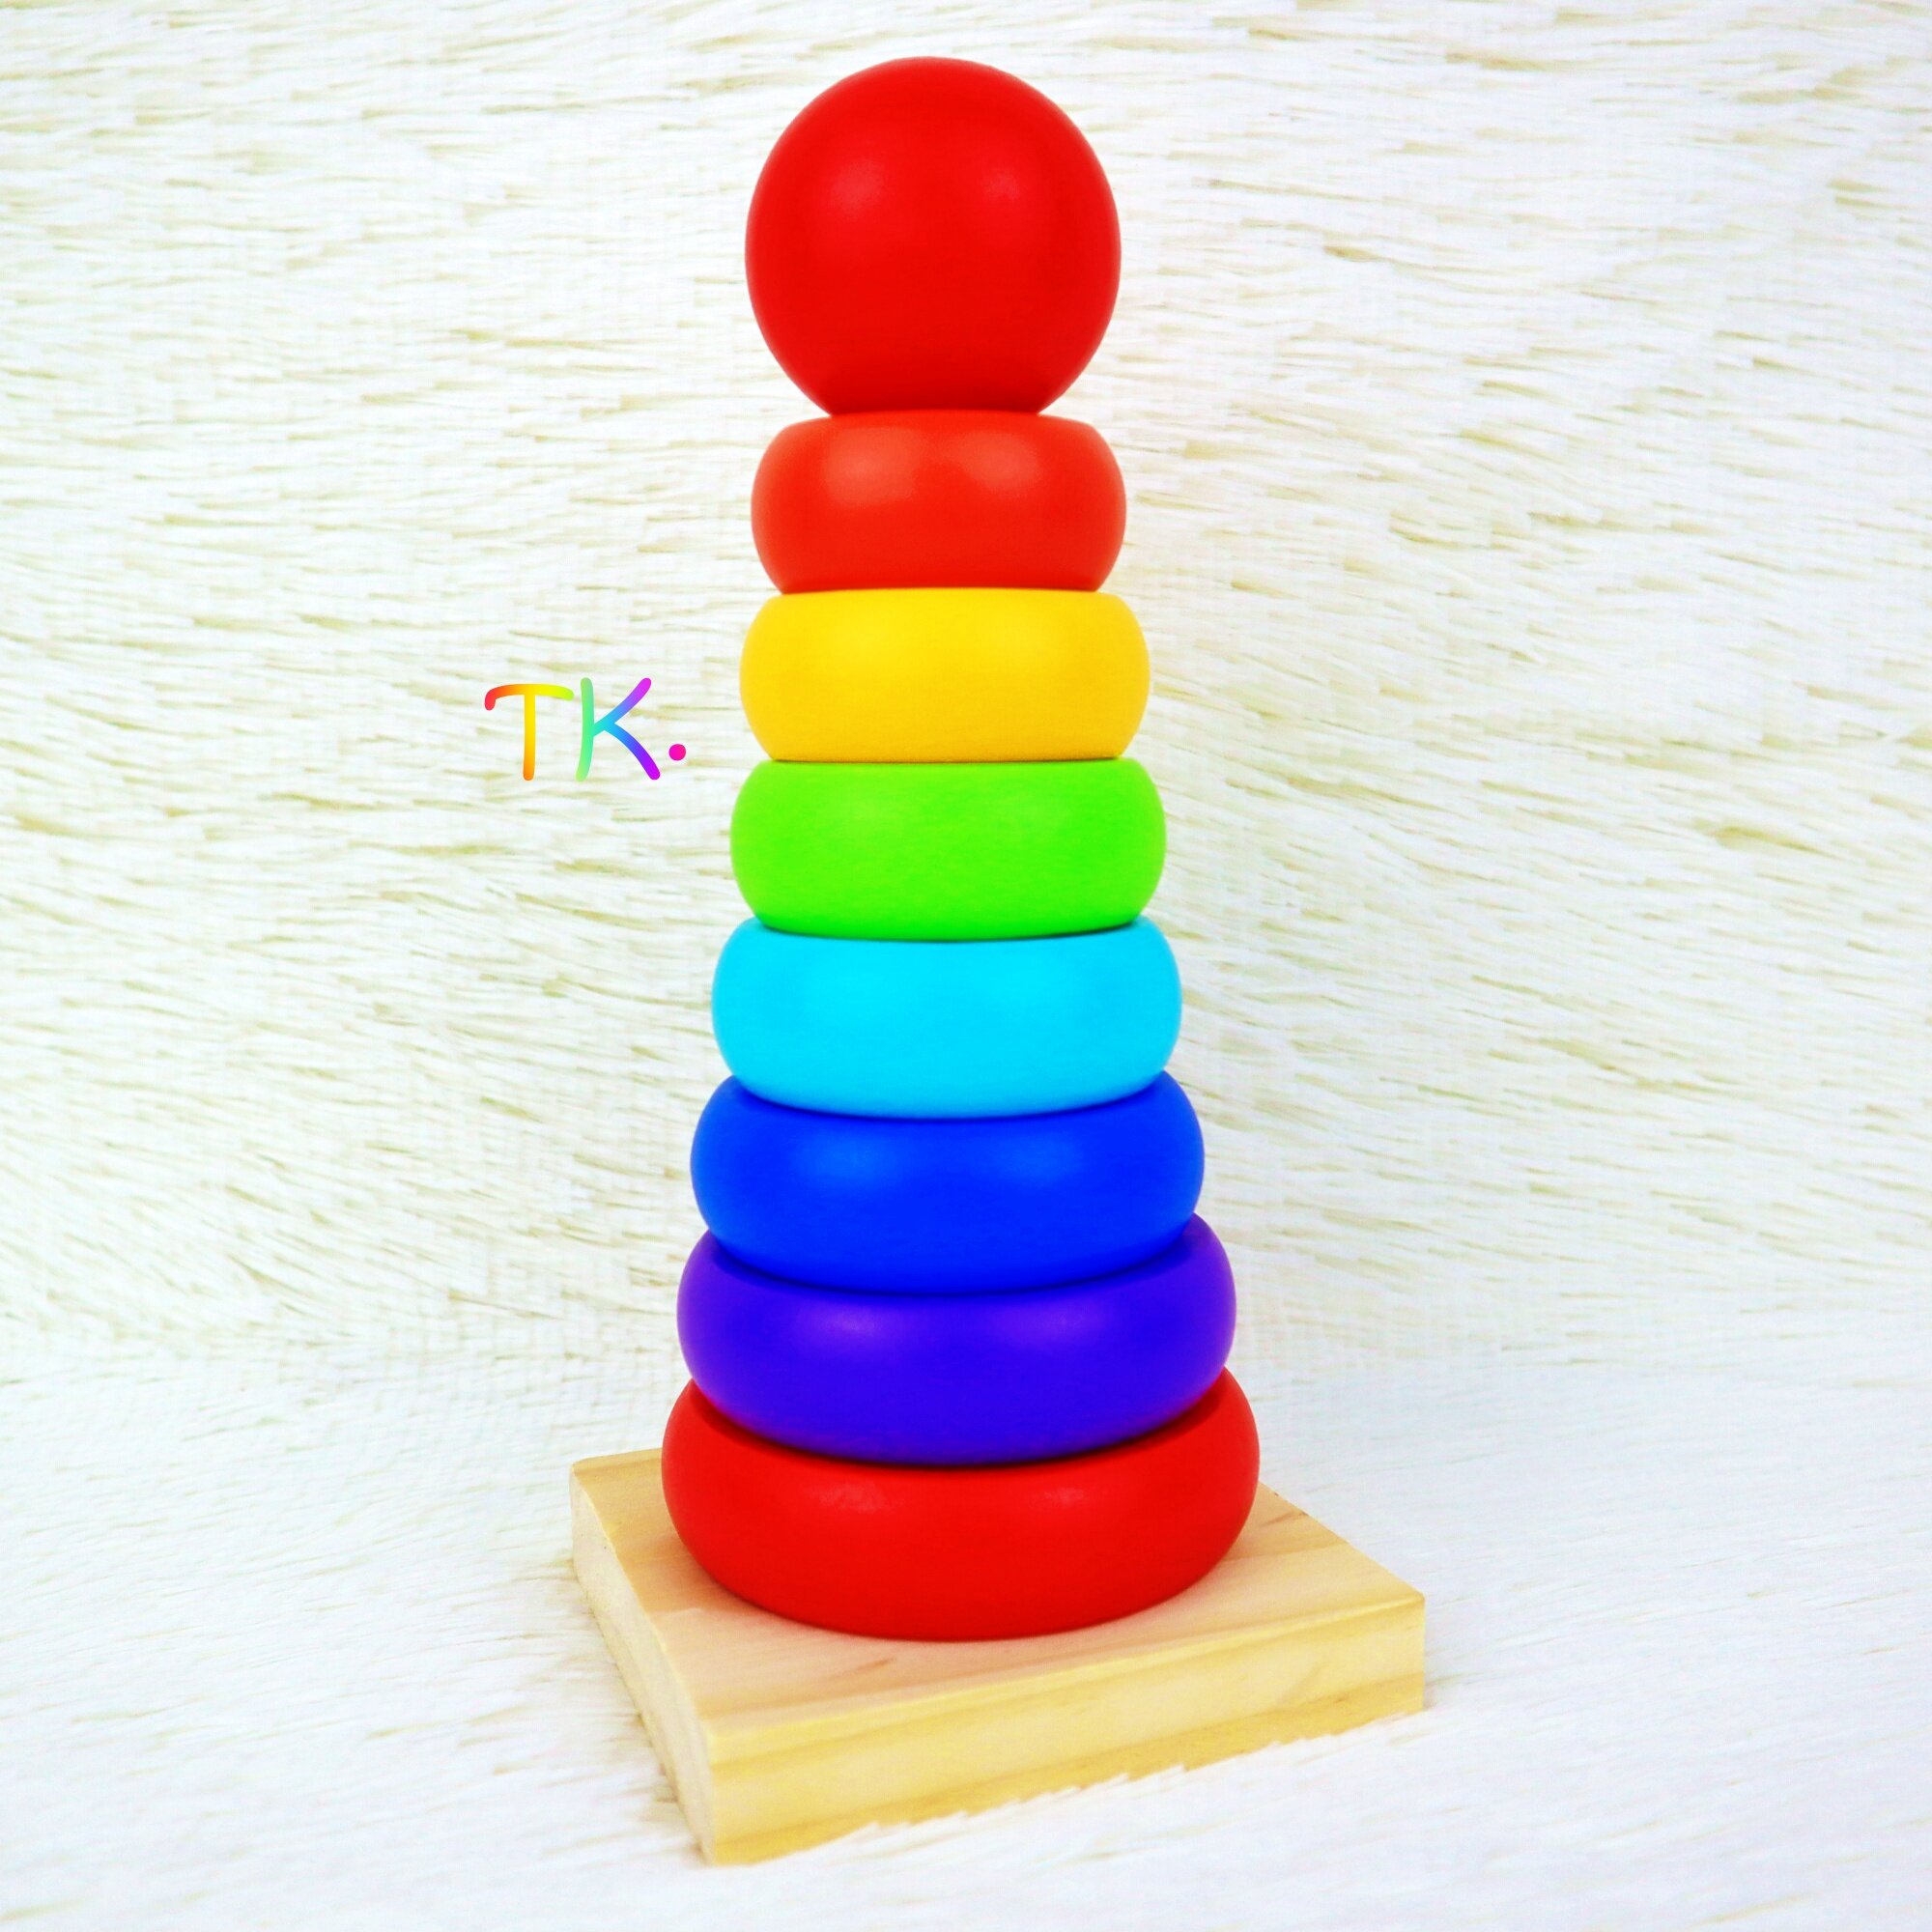 สวมหลัก Rainbow stacker Wooden toy  ร้านค้าแนะนำTK-Toys&Kidsของเล่นไม้ ของเล่นเสริมพัฒนาการ สวมหลักรูปทรงเรขาคณิต ของเล่นเสริมสร้าง IQ EQ MQ 2Y+อนุบาล